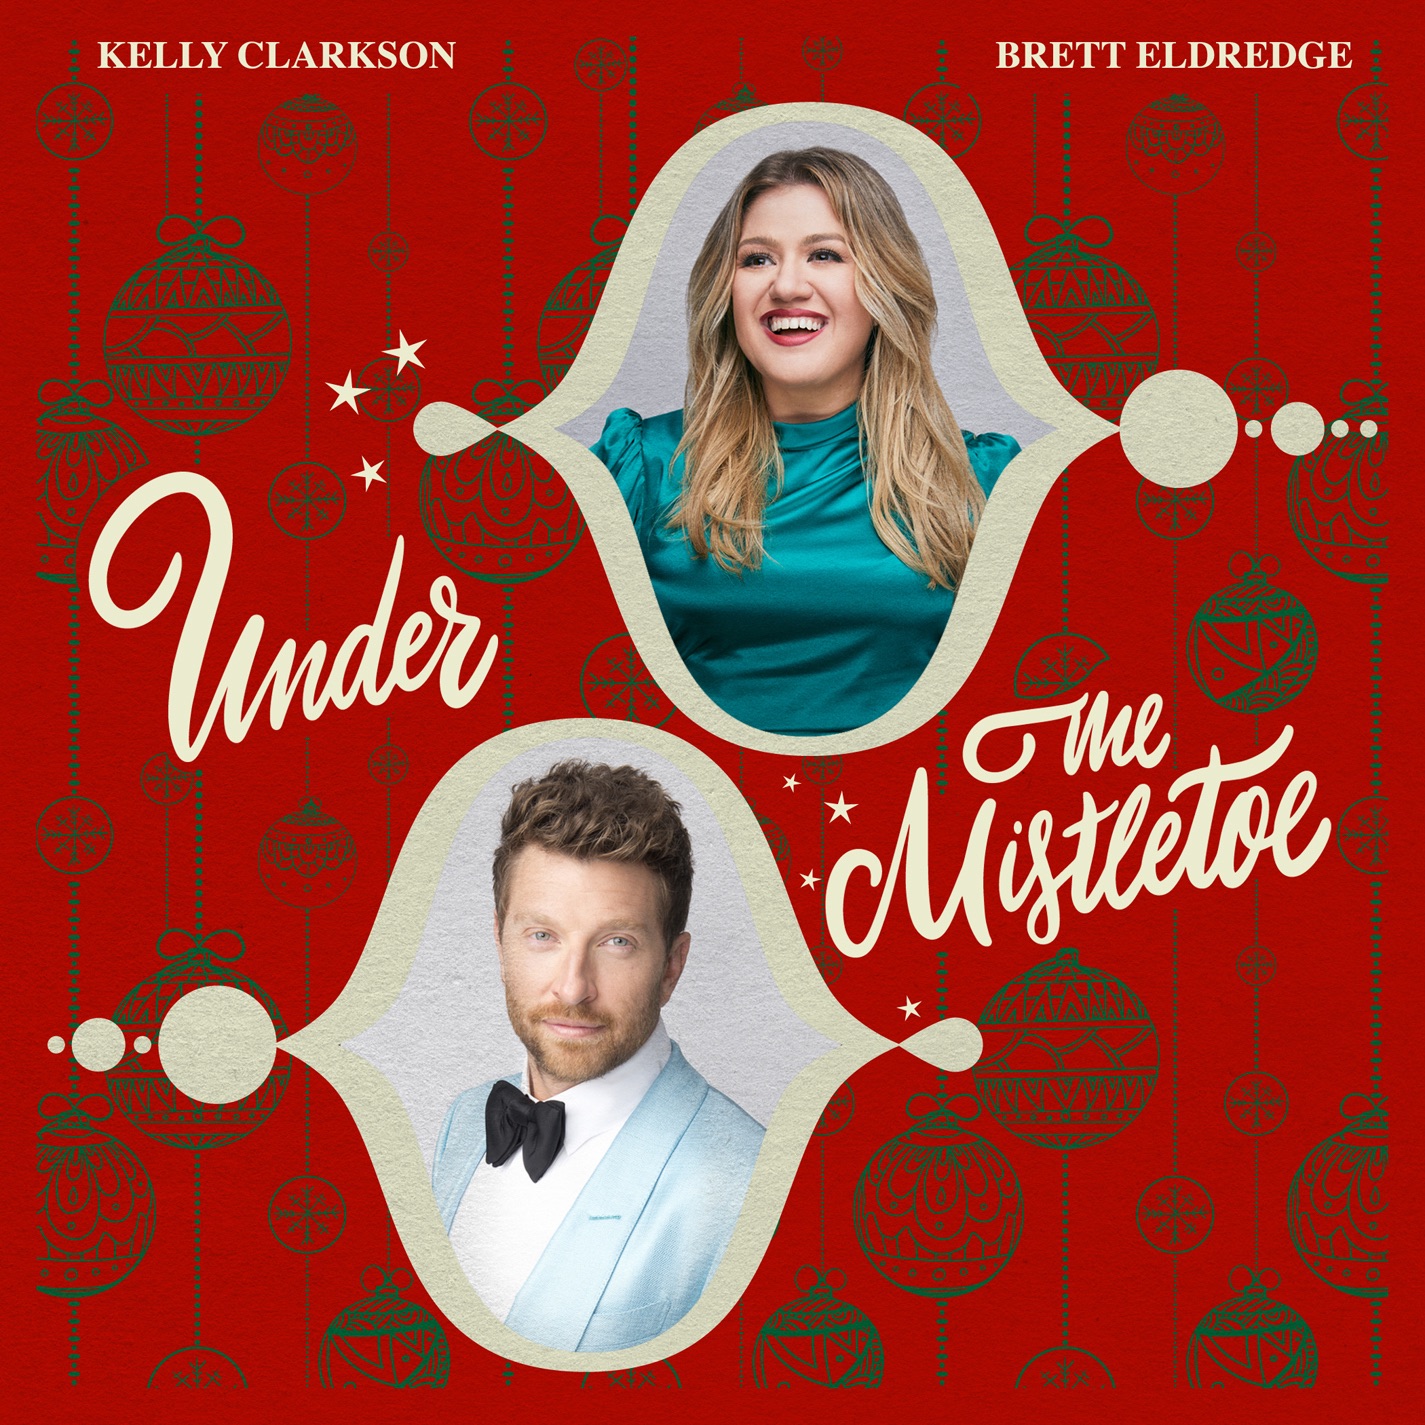 Kelly Clarkson & Brett Eldredge - Under The Mistletoe - Single